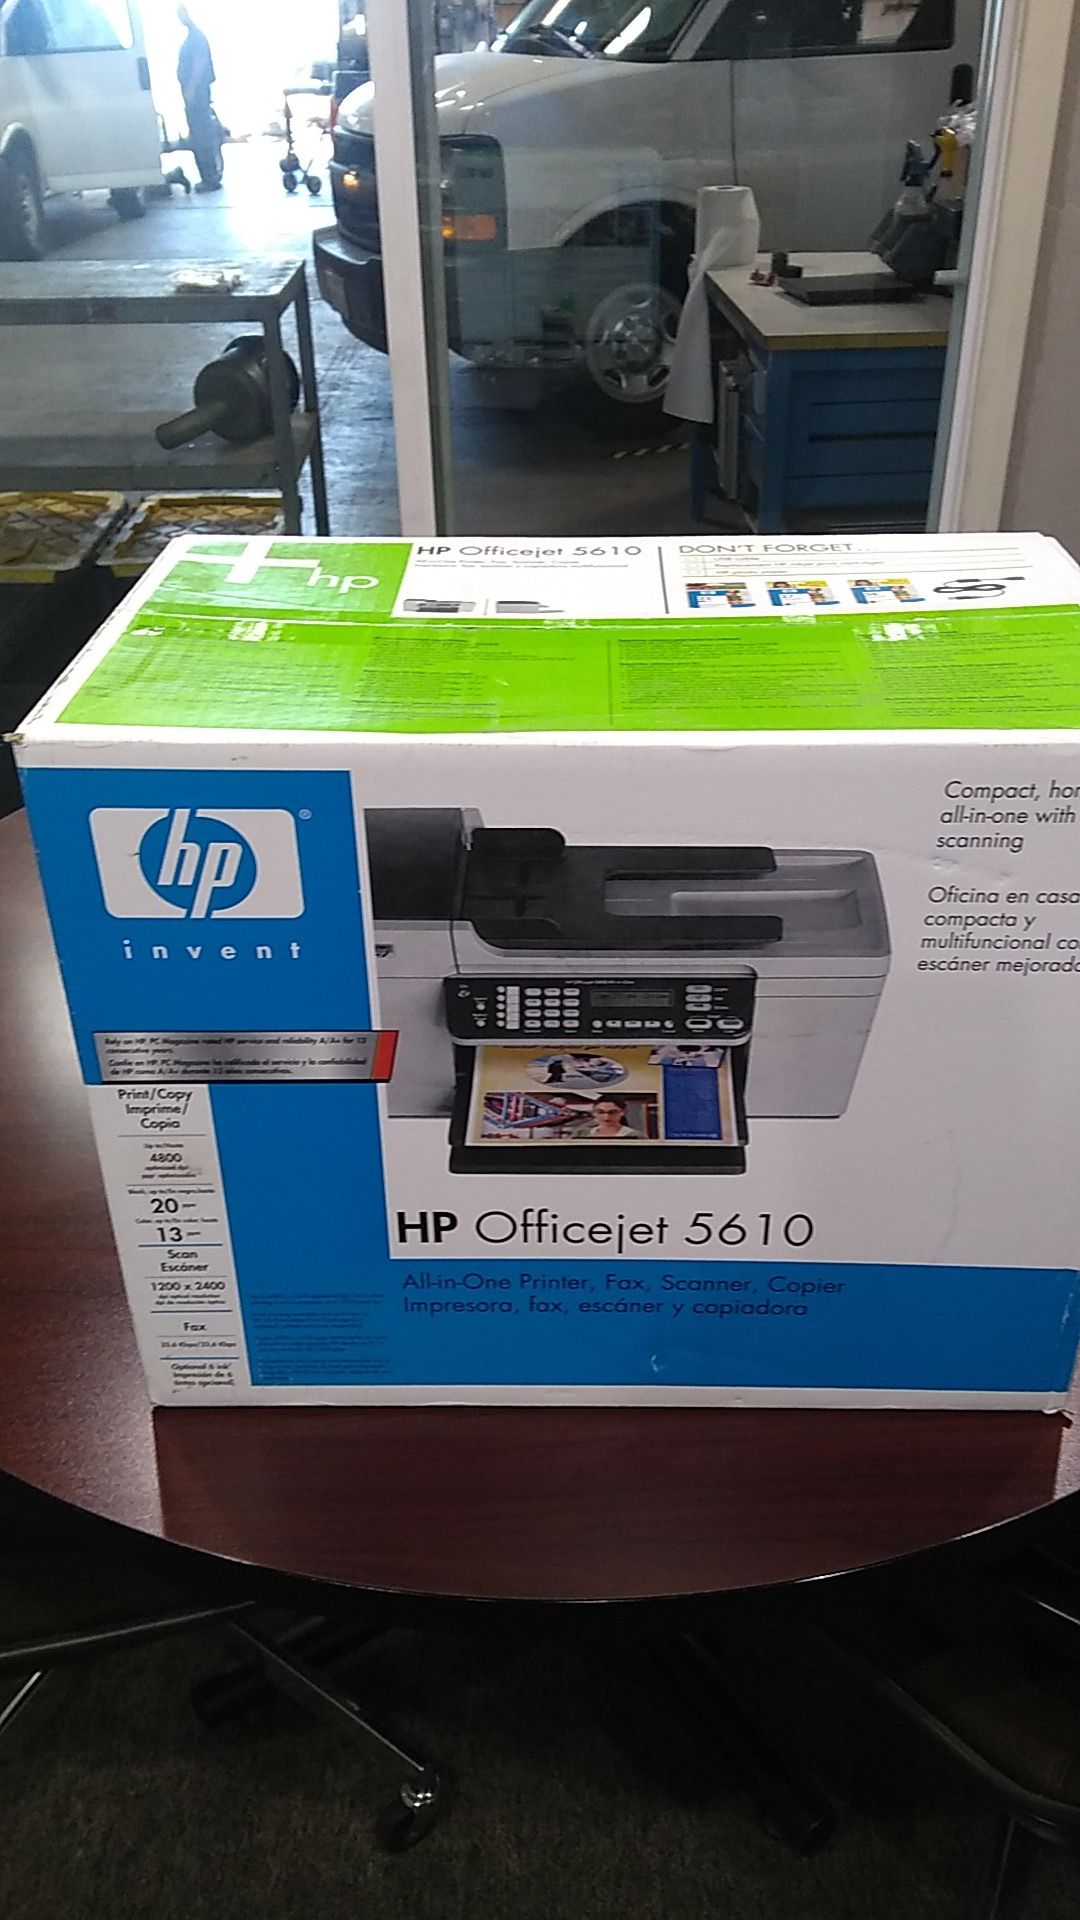 Printer new in box